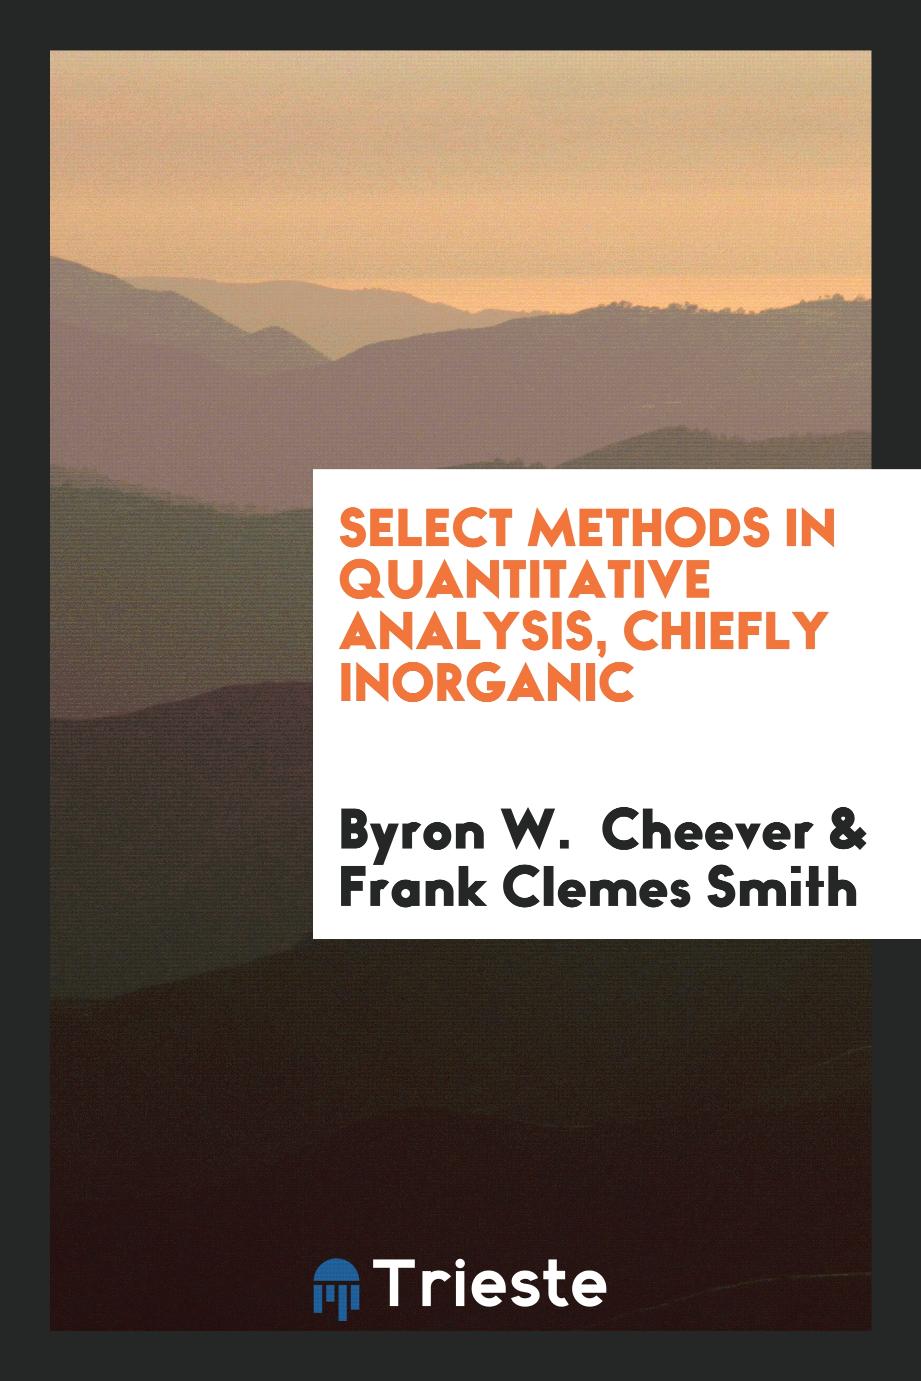 Select methods in quantitative analysis, chiefly inorganic